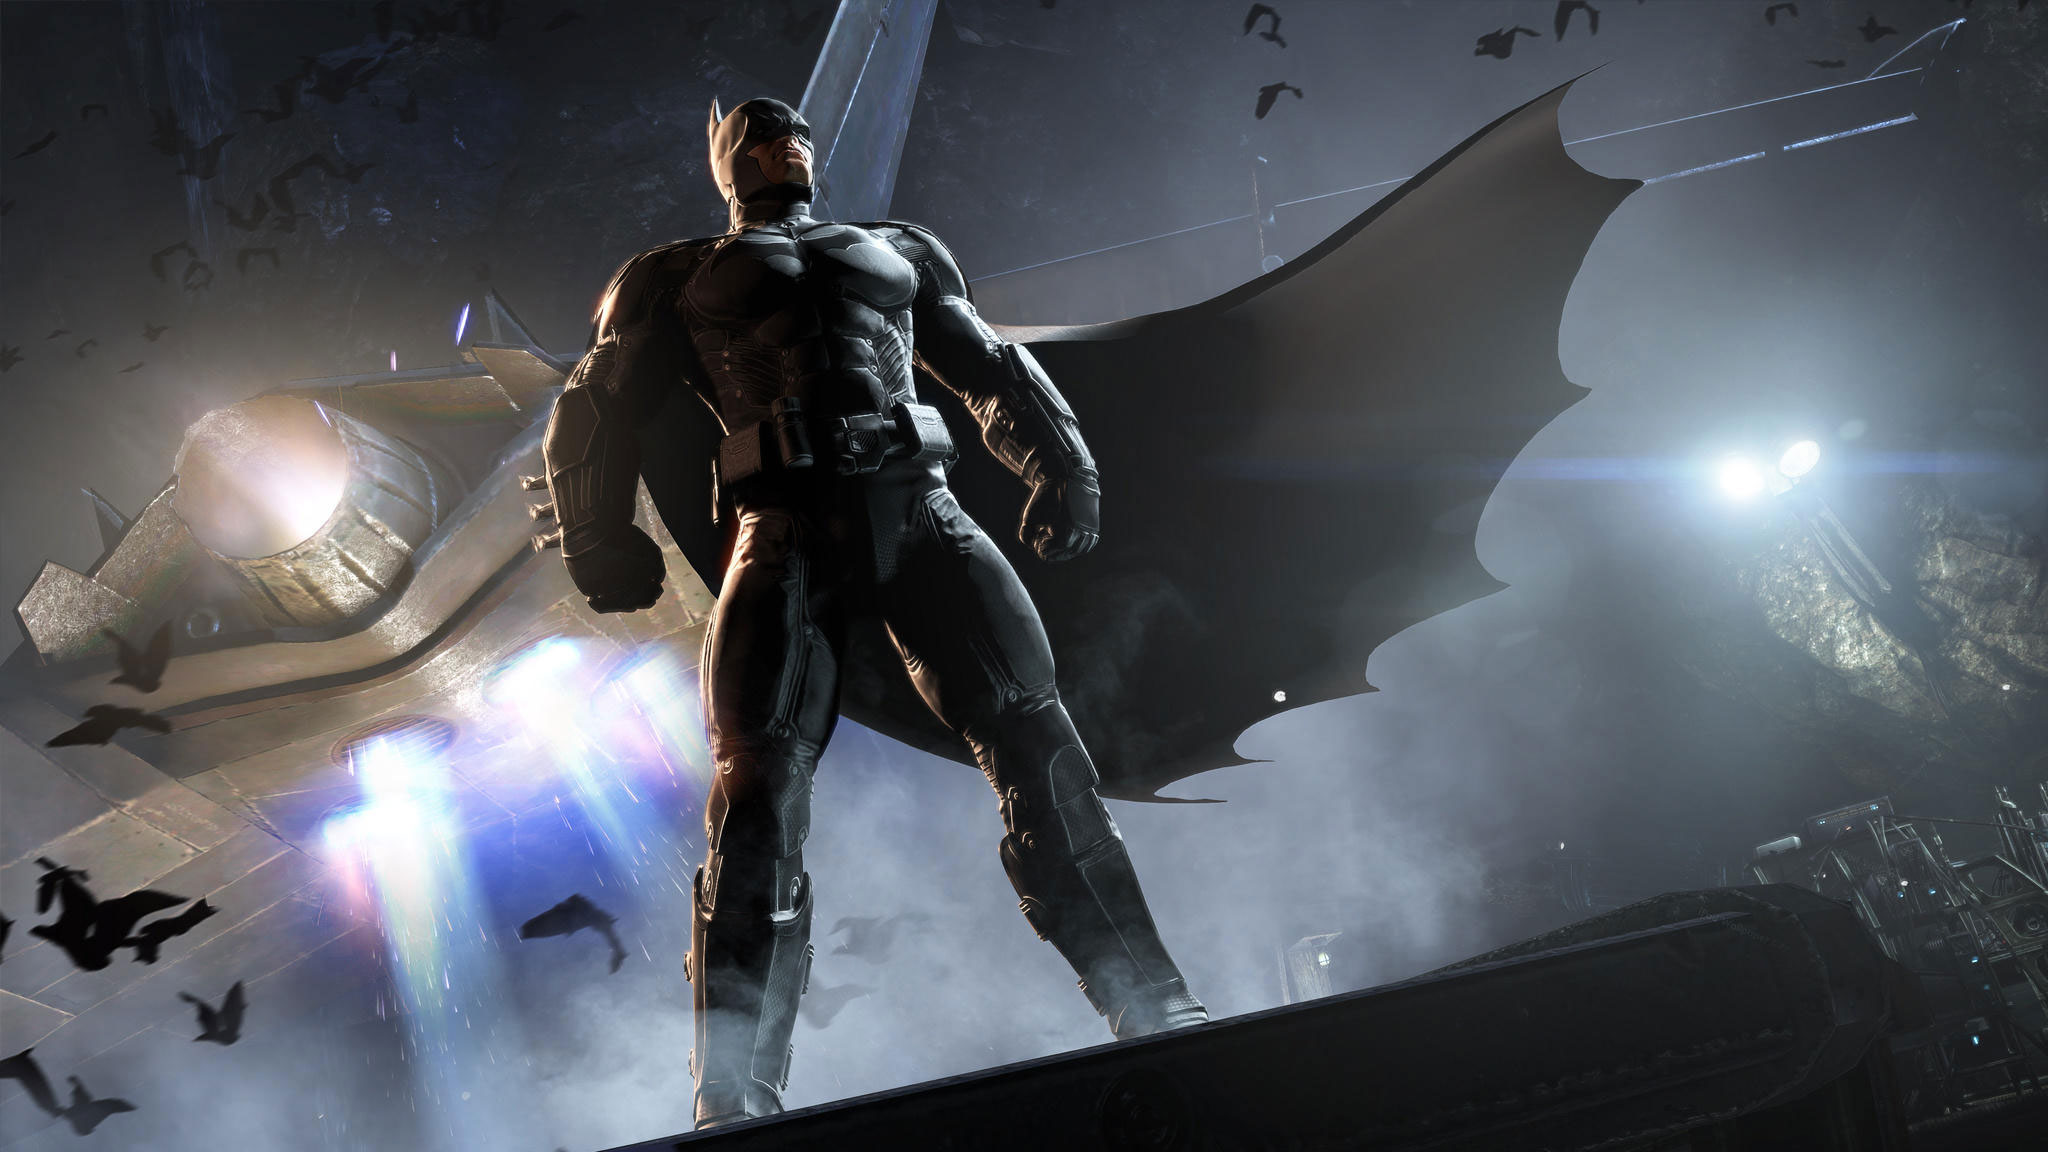 Za darmo sprawdzisz 6 gier z Batmanem dzięki współpracy Warner Bros. z EA